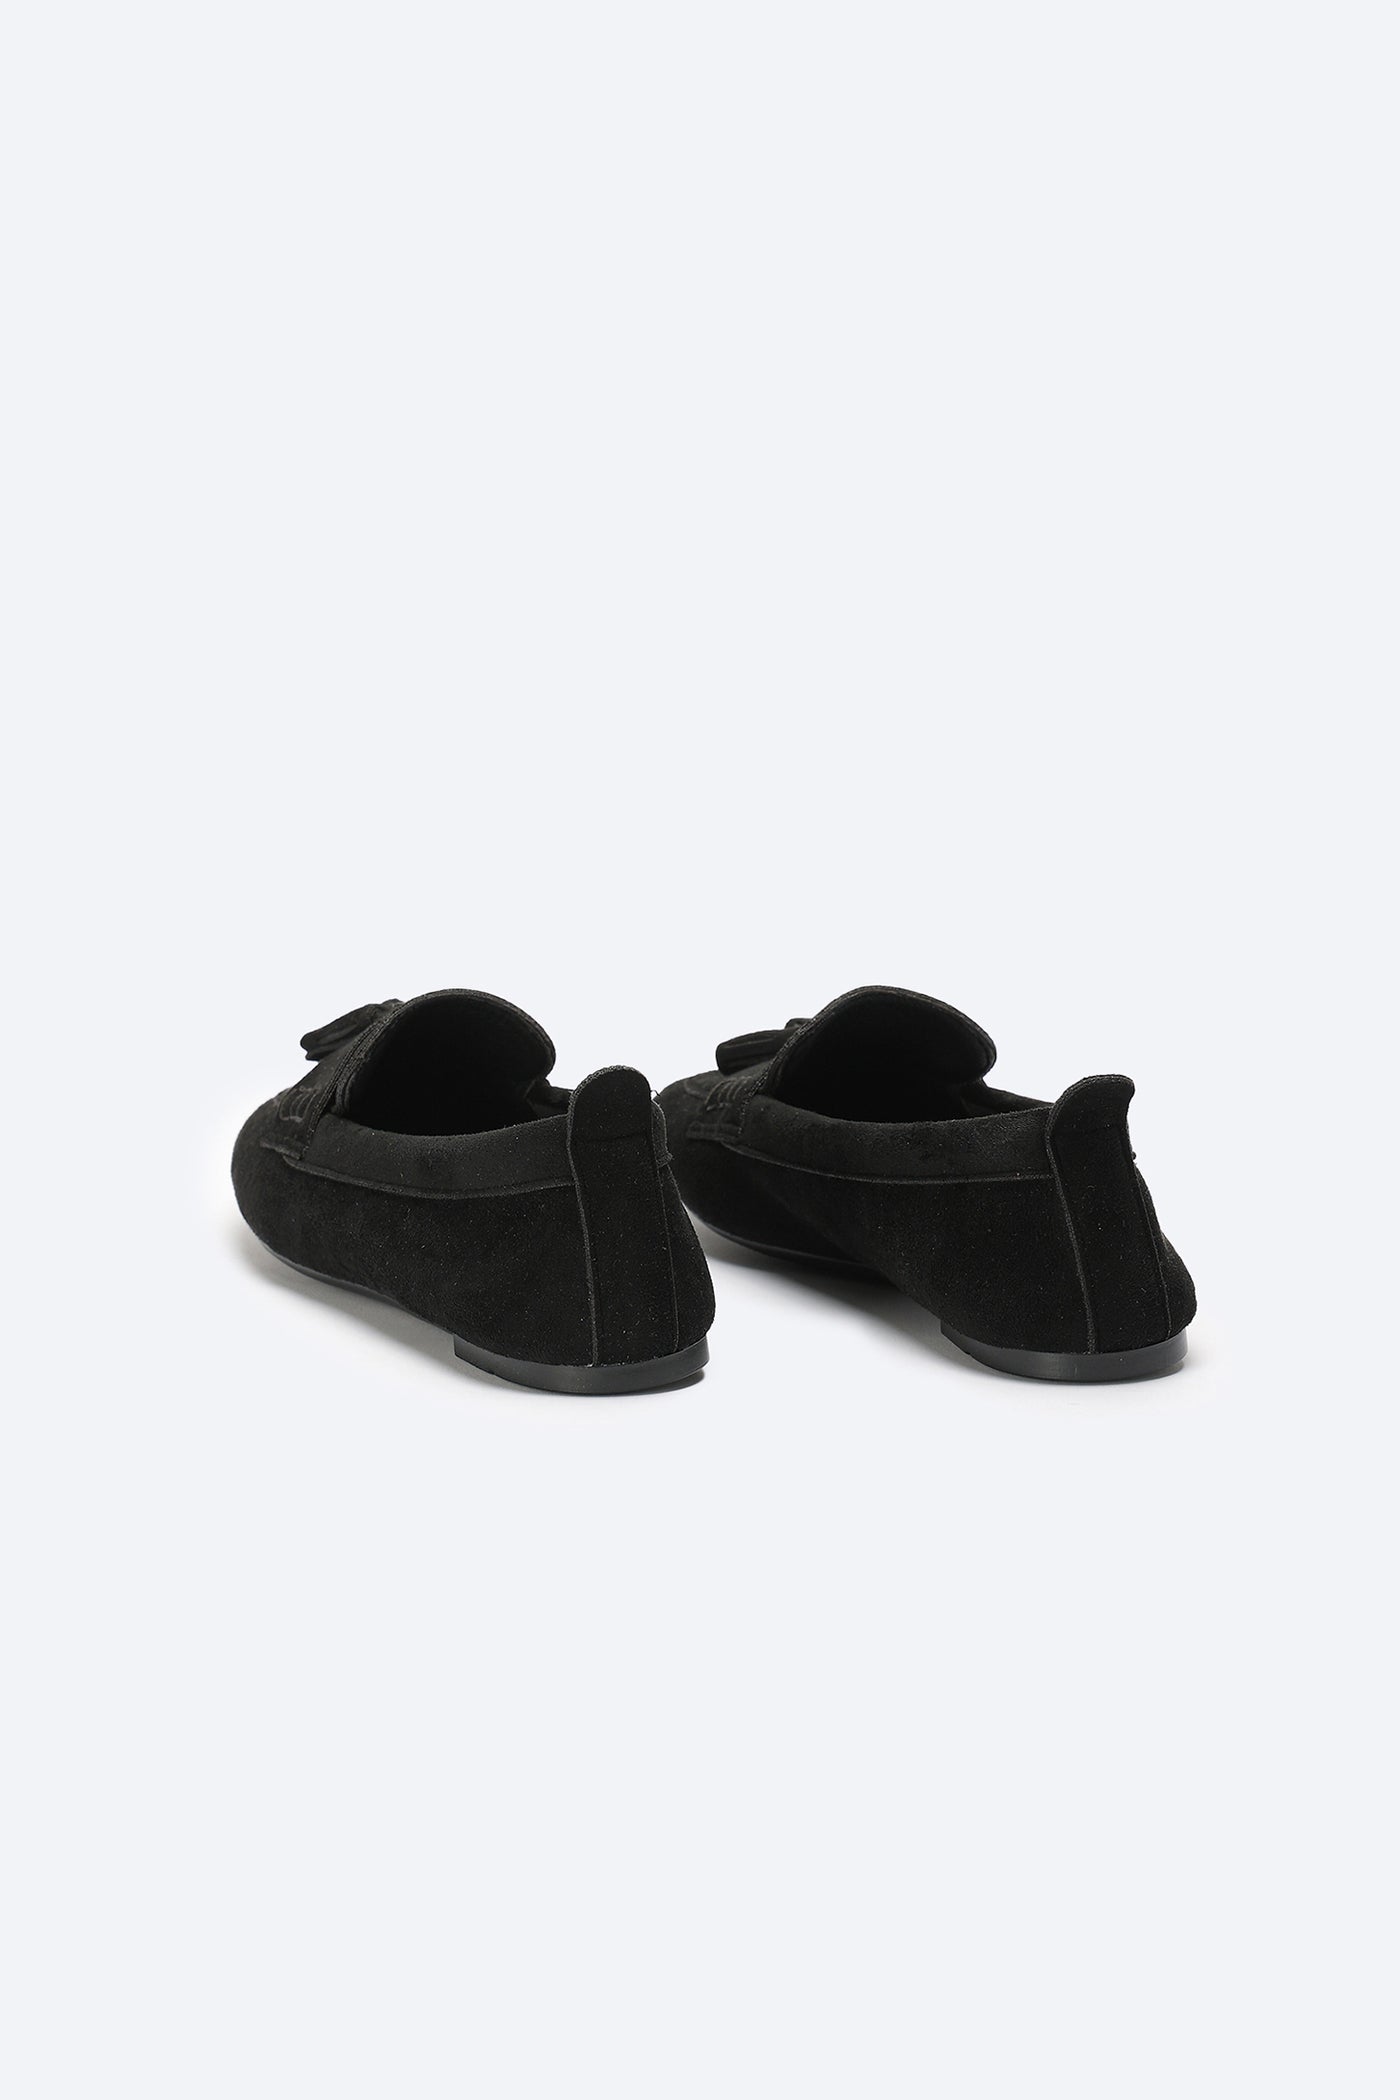 حذاء لوفر - تفاصيل بشراشيب - أسود